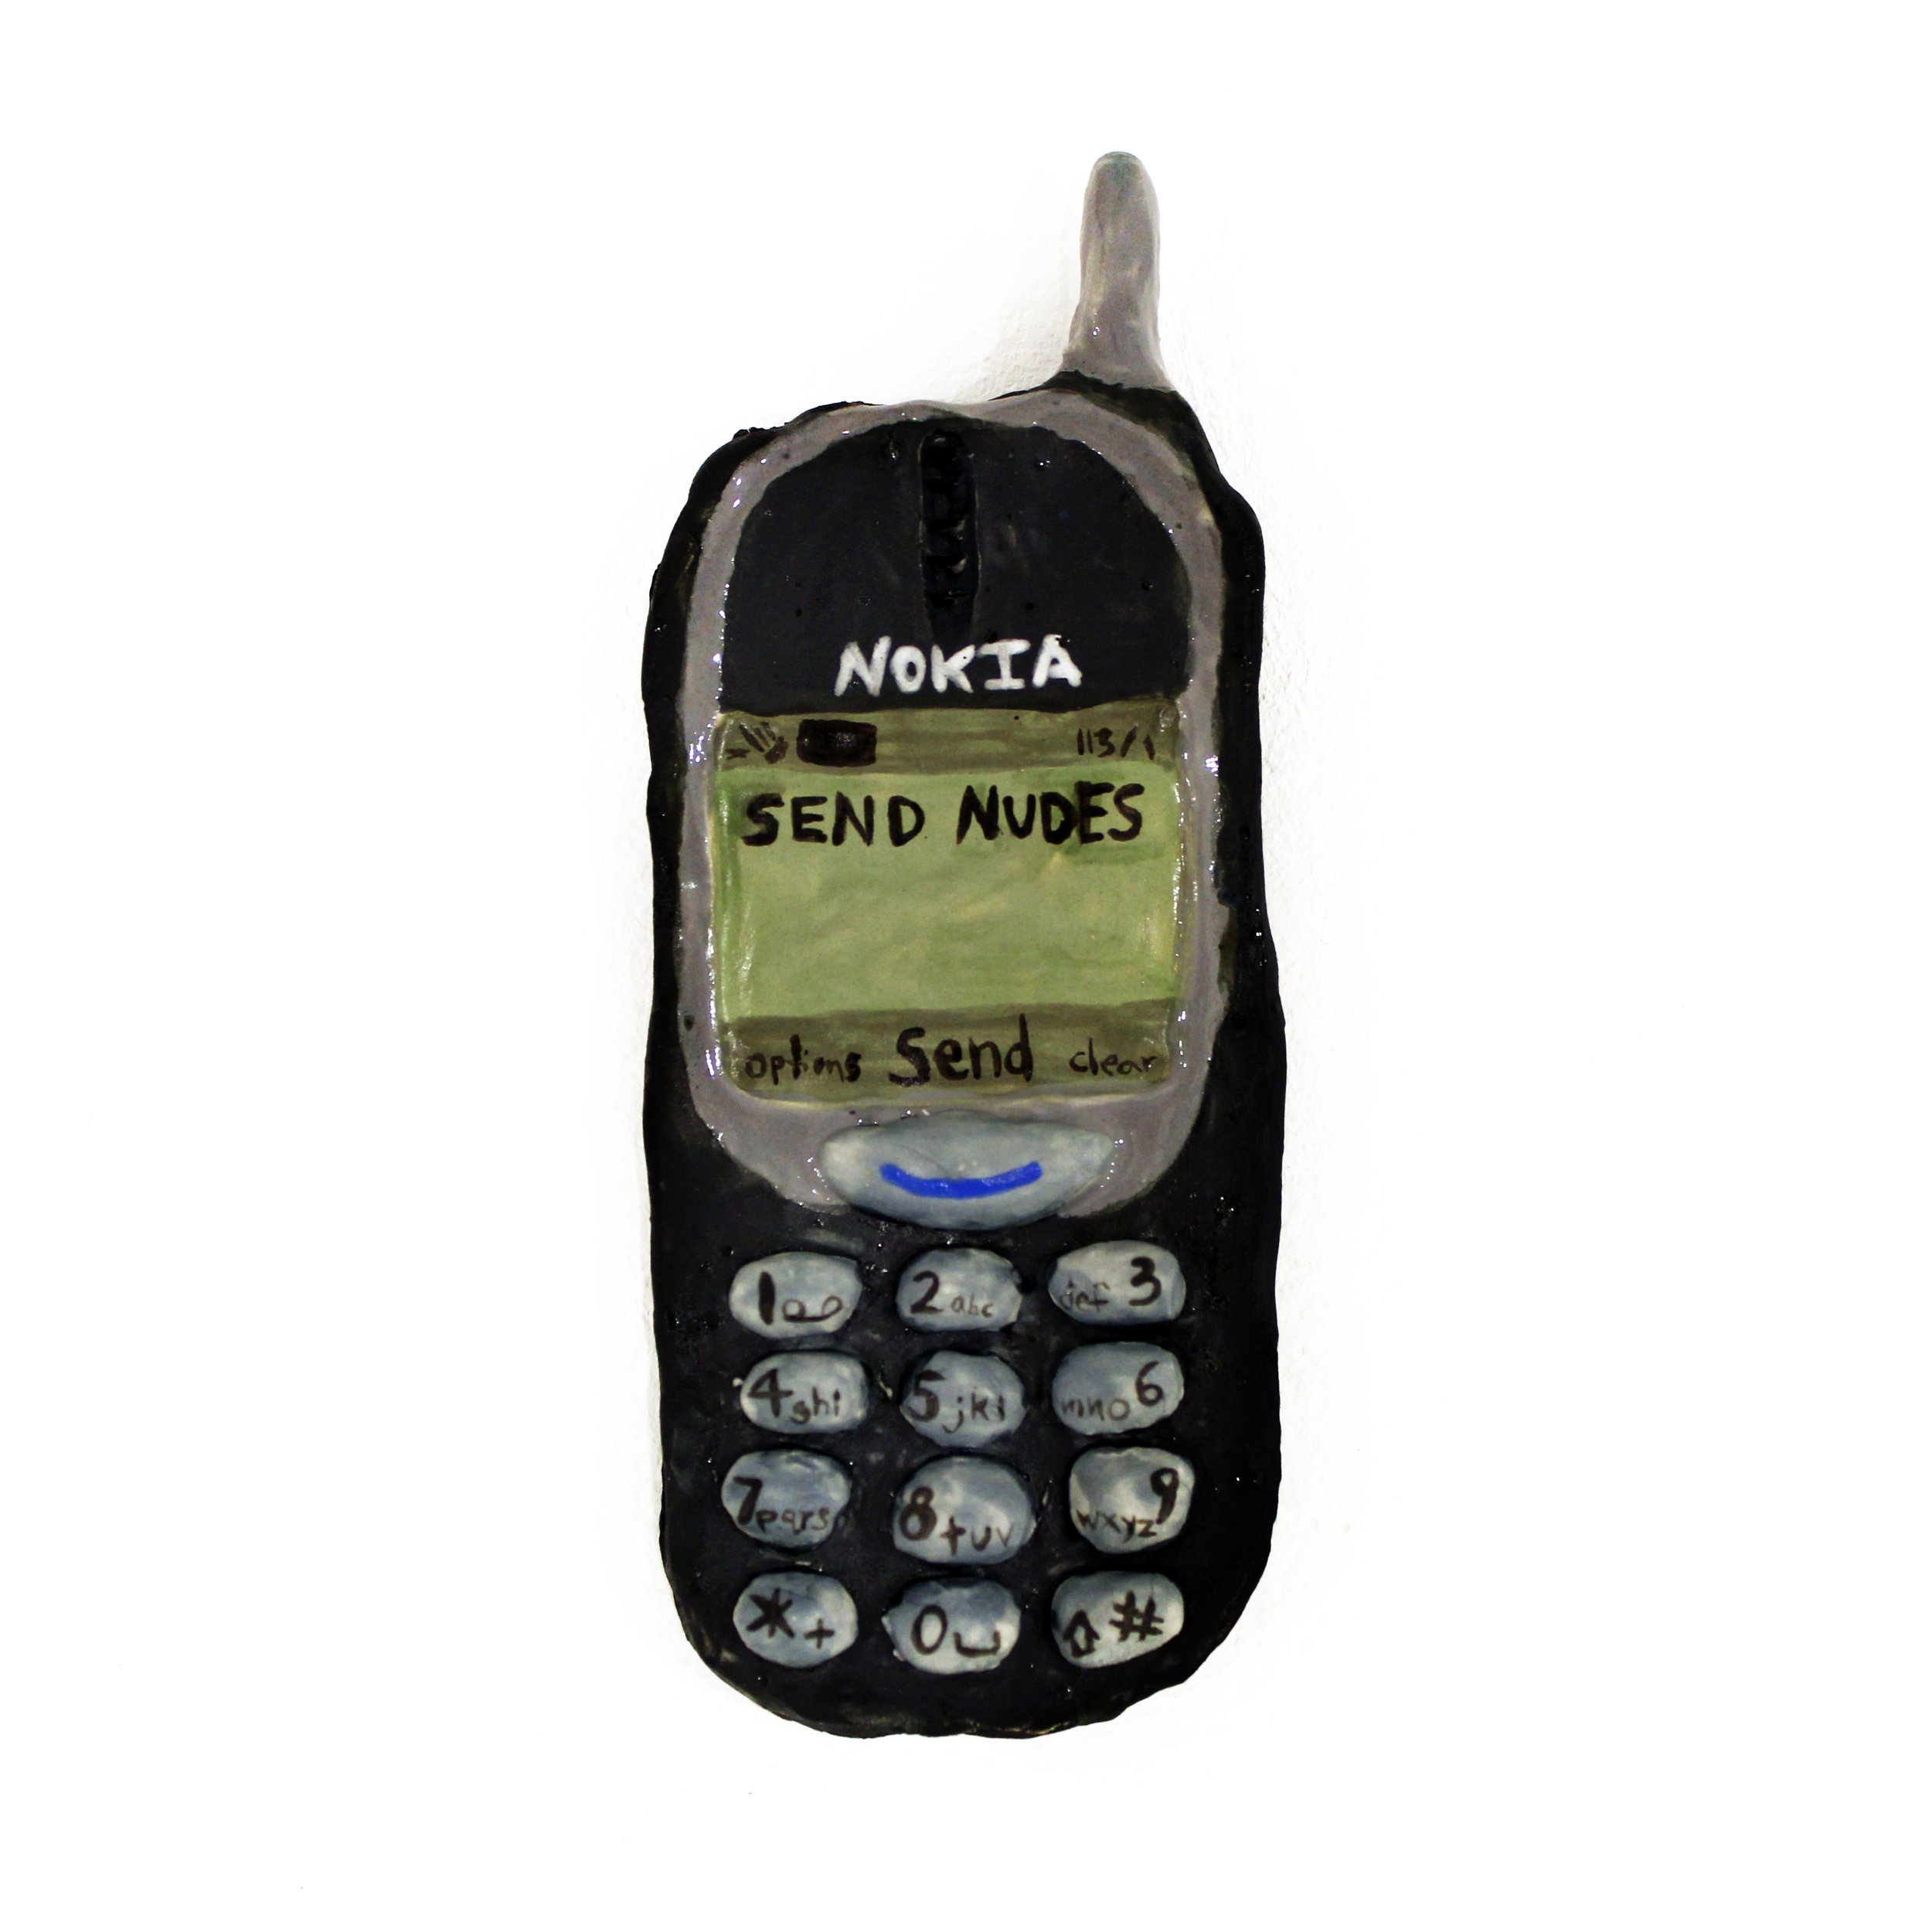 SEND NUDES (on a Nokia)